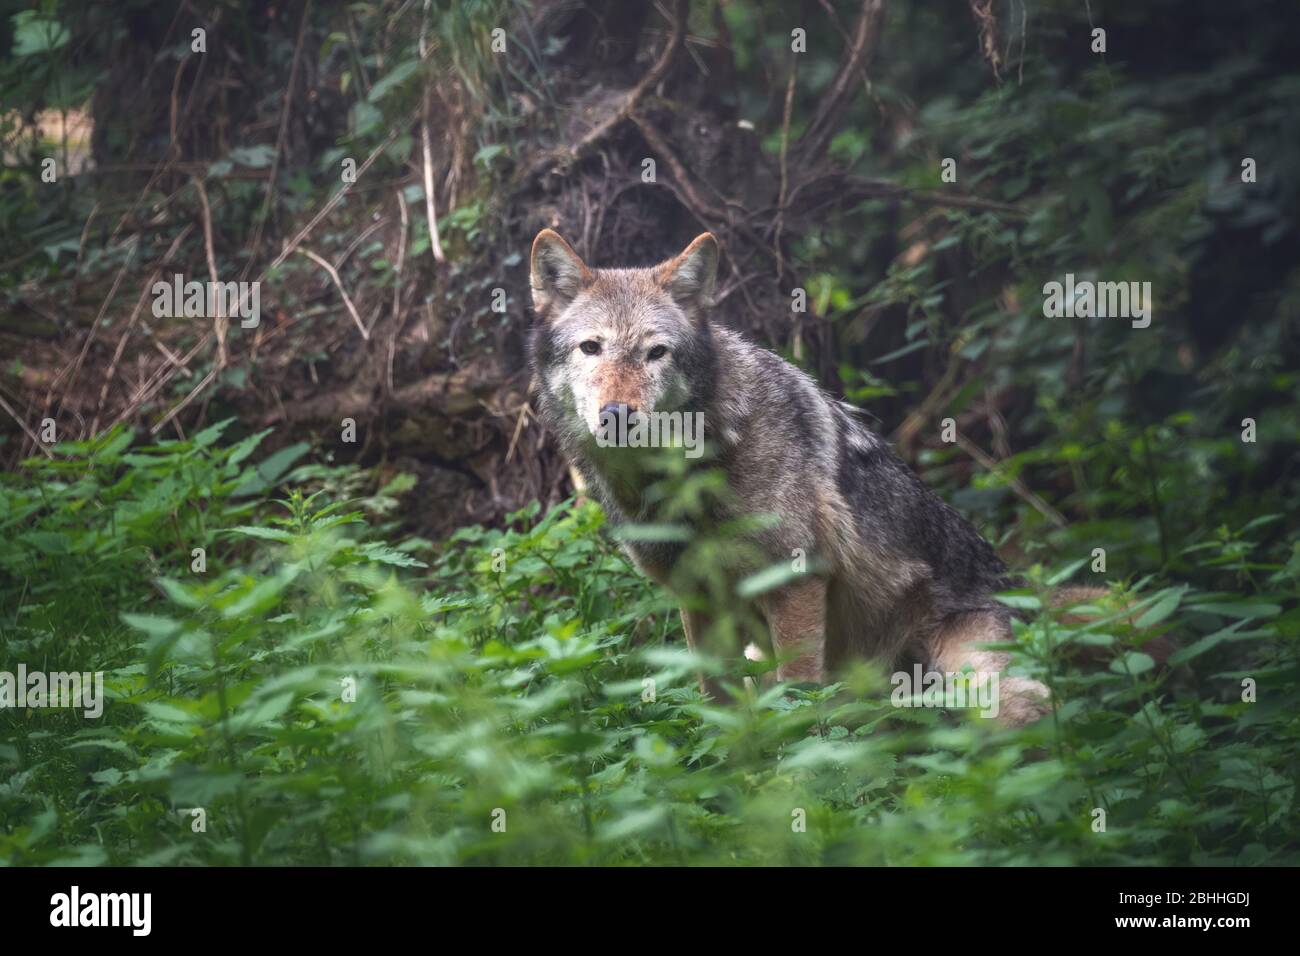 Un lupo della valle di Mackenzie, Canis lupus occidentalis, nascosto nel sottobosco forestale. Si tratta di una sottospecie del lupo grigio e della più grande specie di lupo in Foto Stock